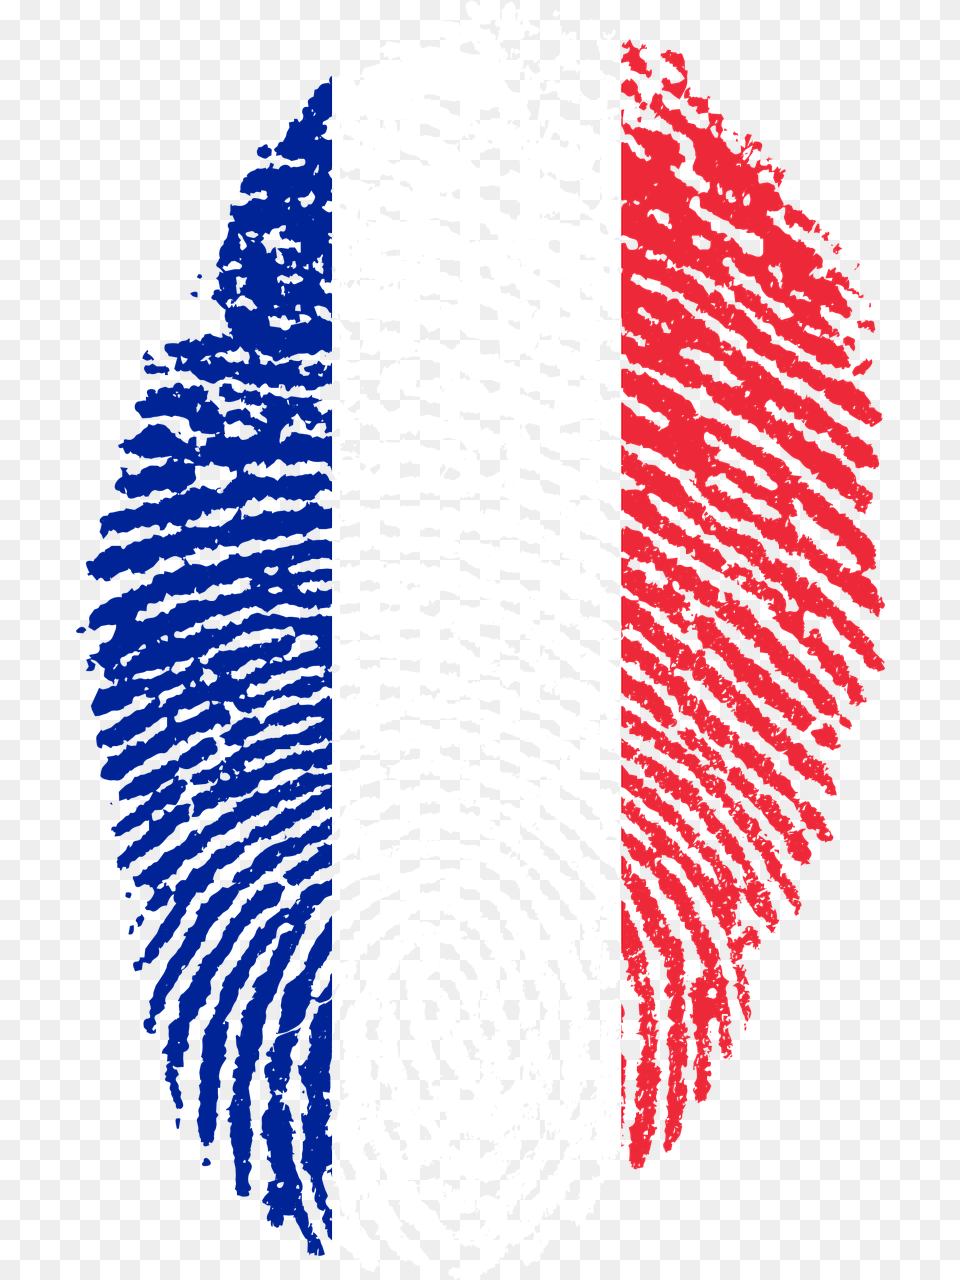 France France Flag Fingerprint Country Pride Iden France France Flag Fingerprint, Face, Head, Person, Home Decor Free Png Download